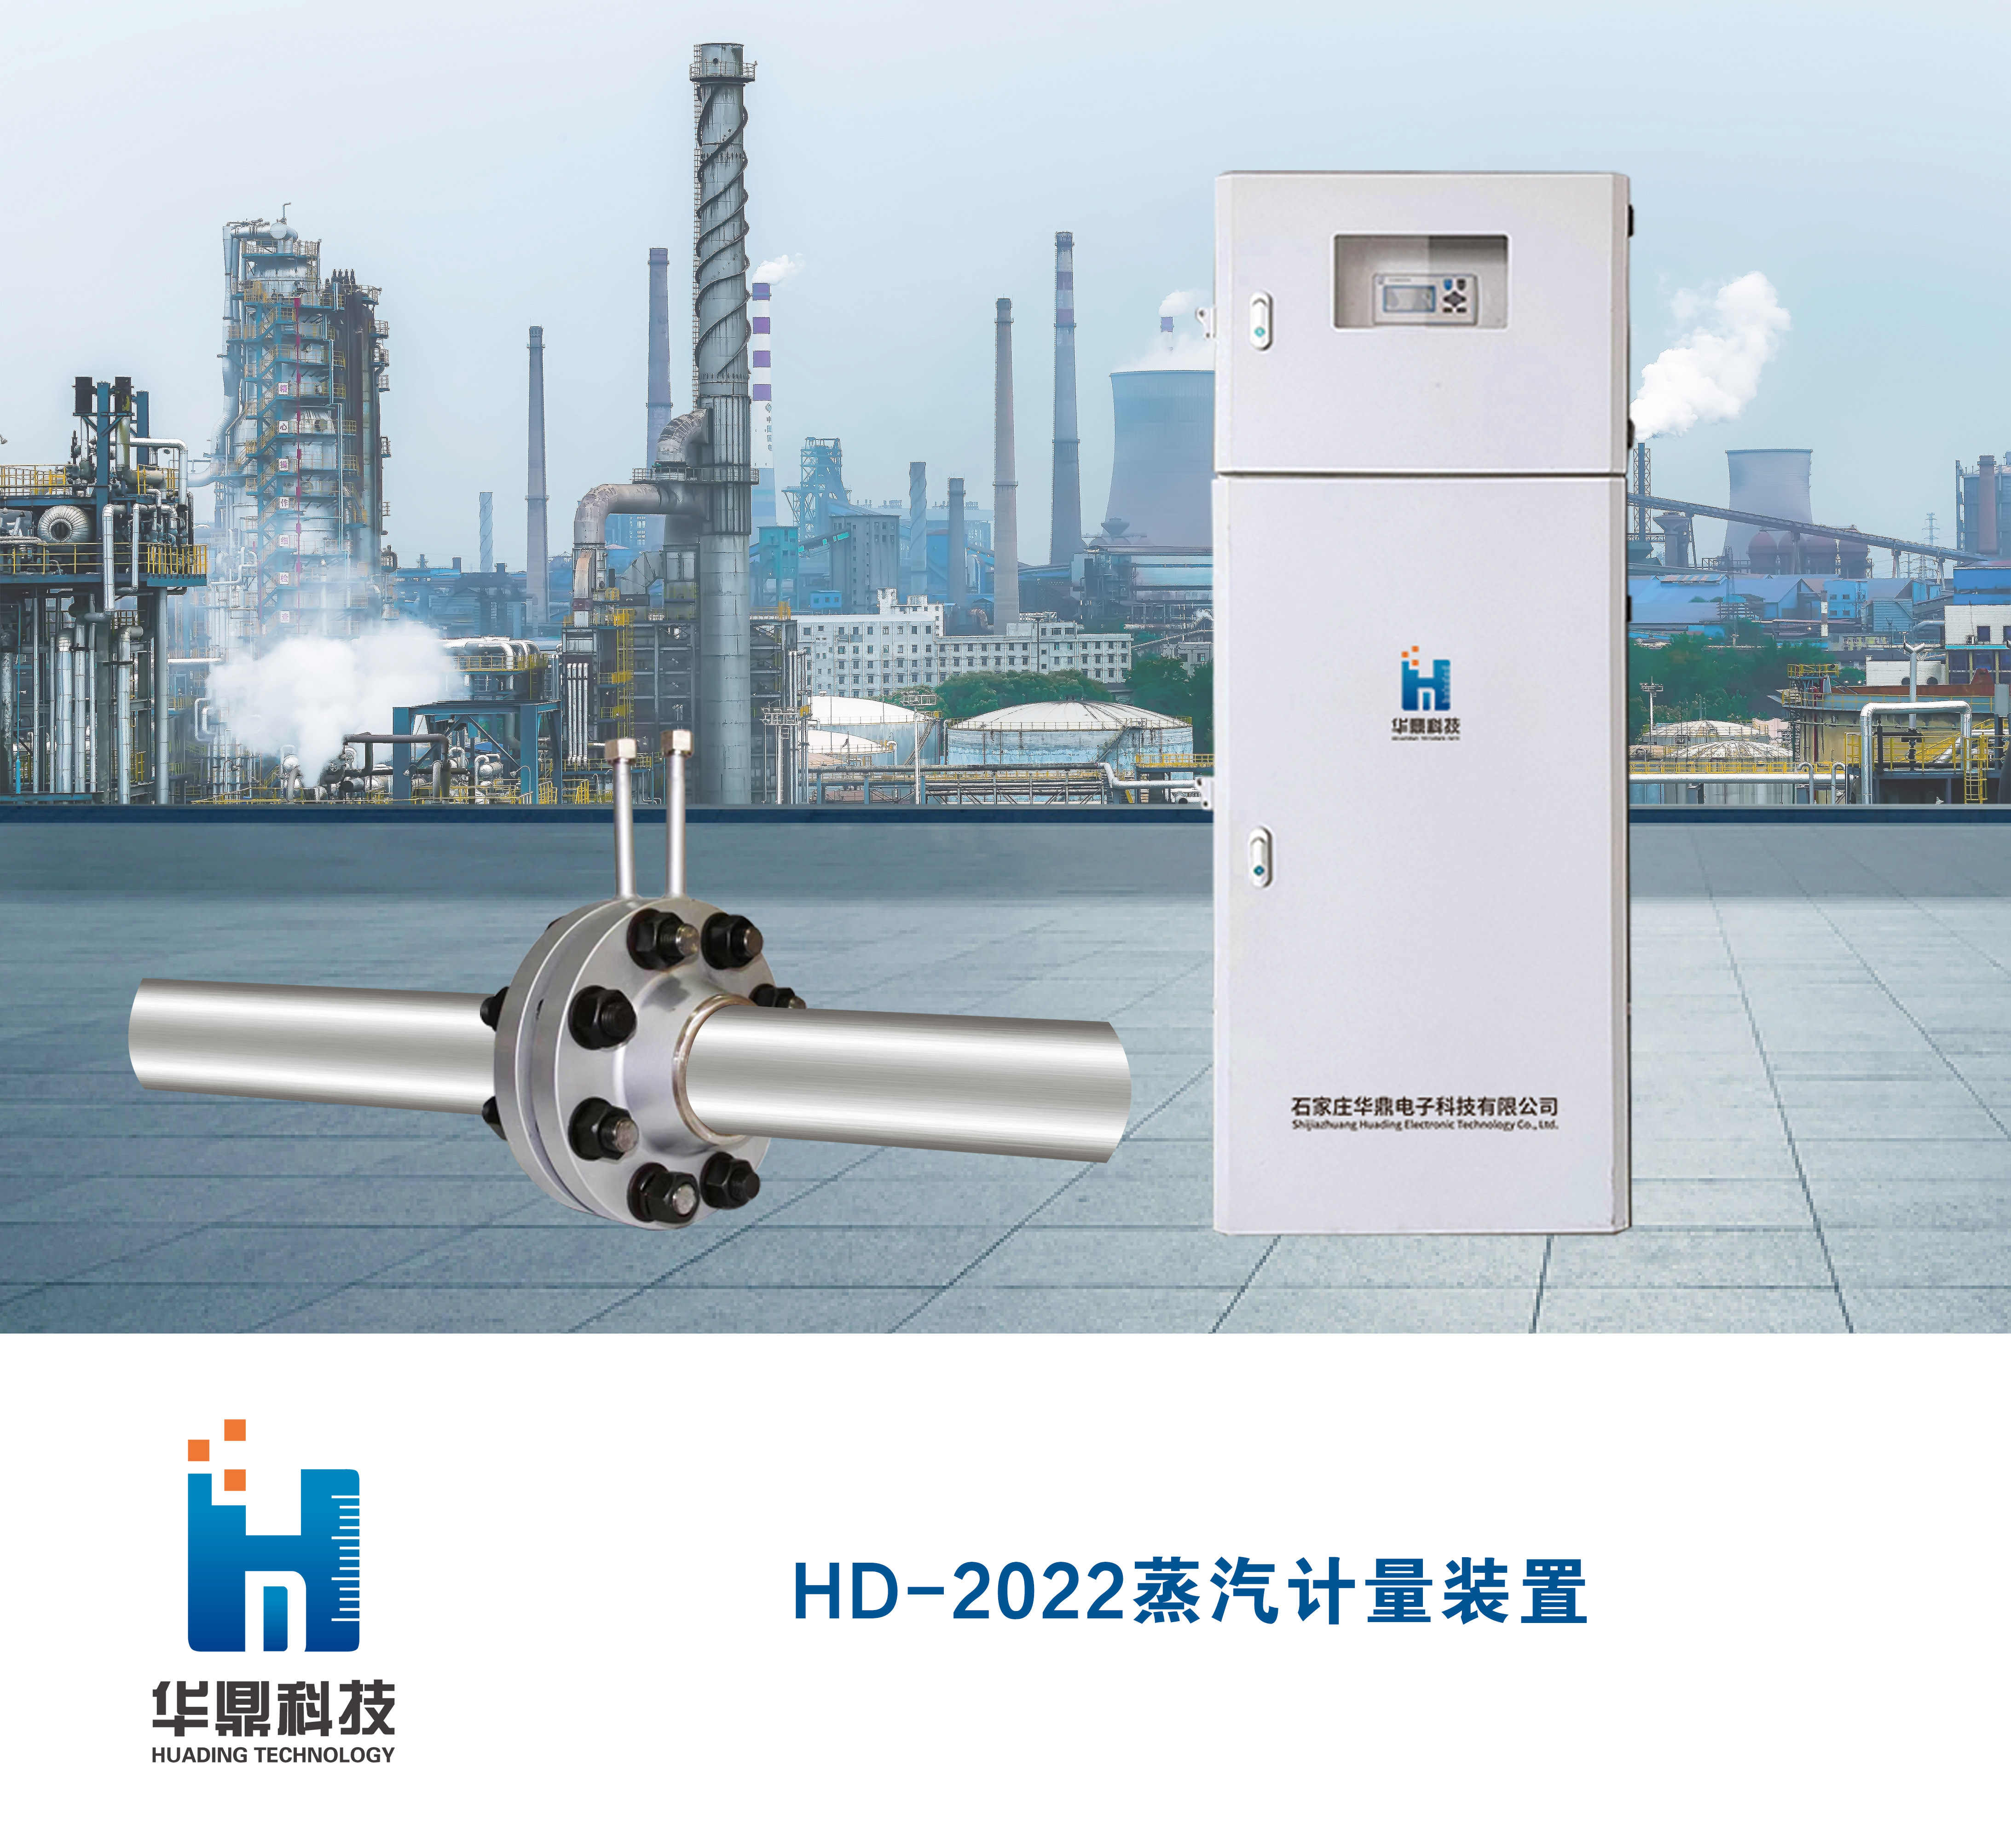 HD-2022蒸汽计量装置